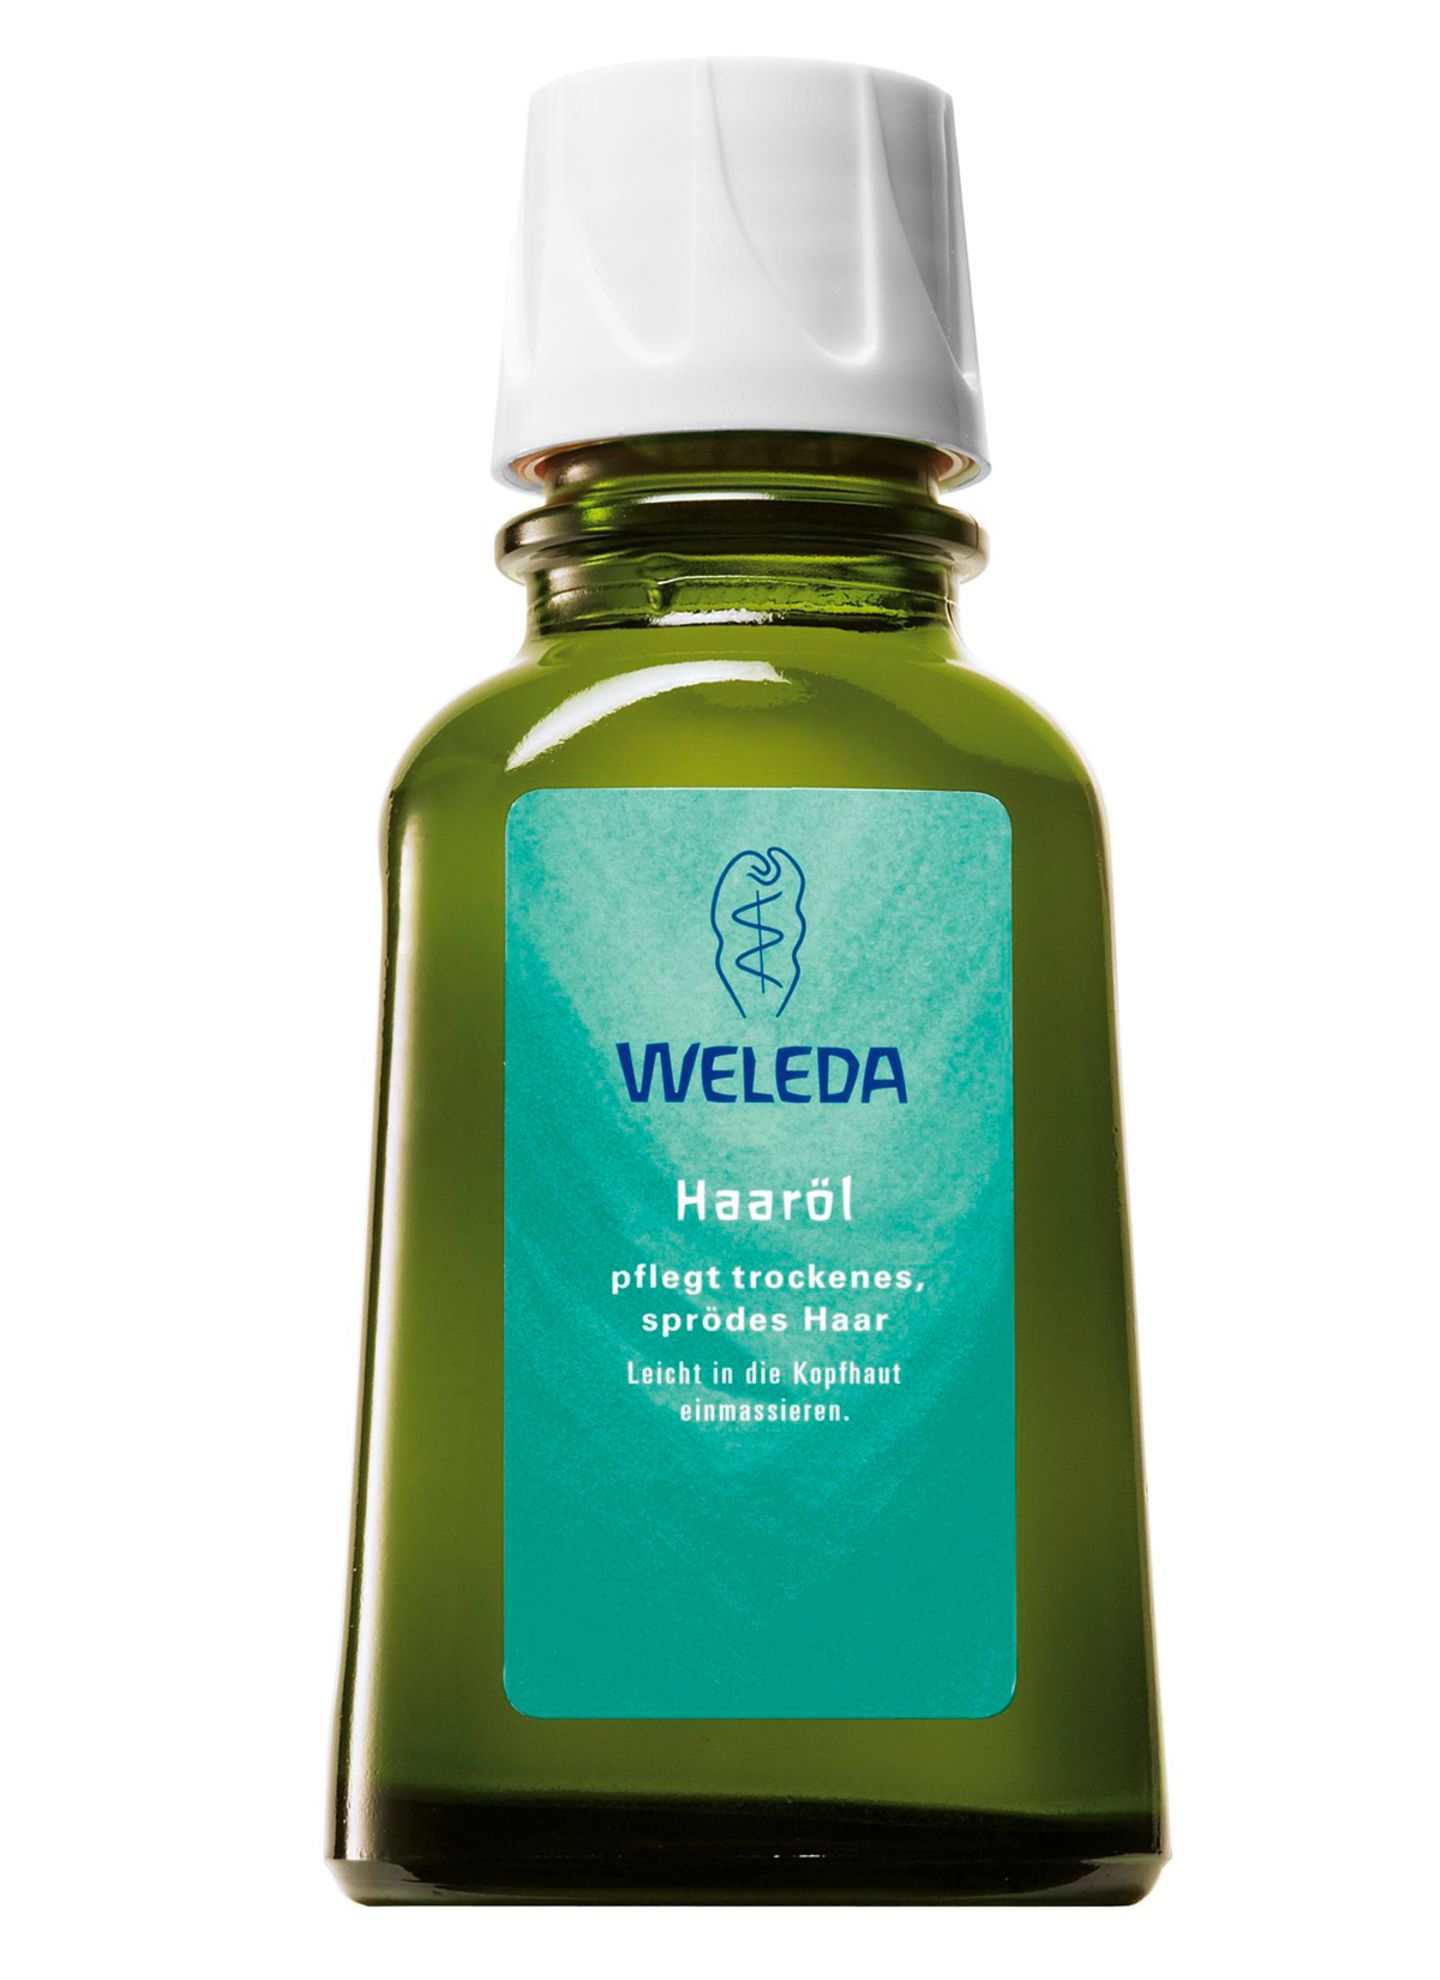 Naturfreund Pflegt empfindliche Kopfhaut mit Pflanzenöl und Auszügen aus Kleeblüten: das "Haaröl" von Weleda, 50 ml, ca. 9 Euro